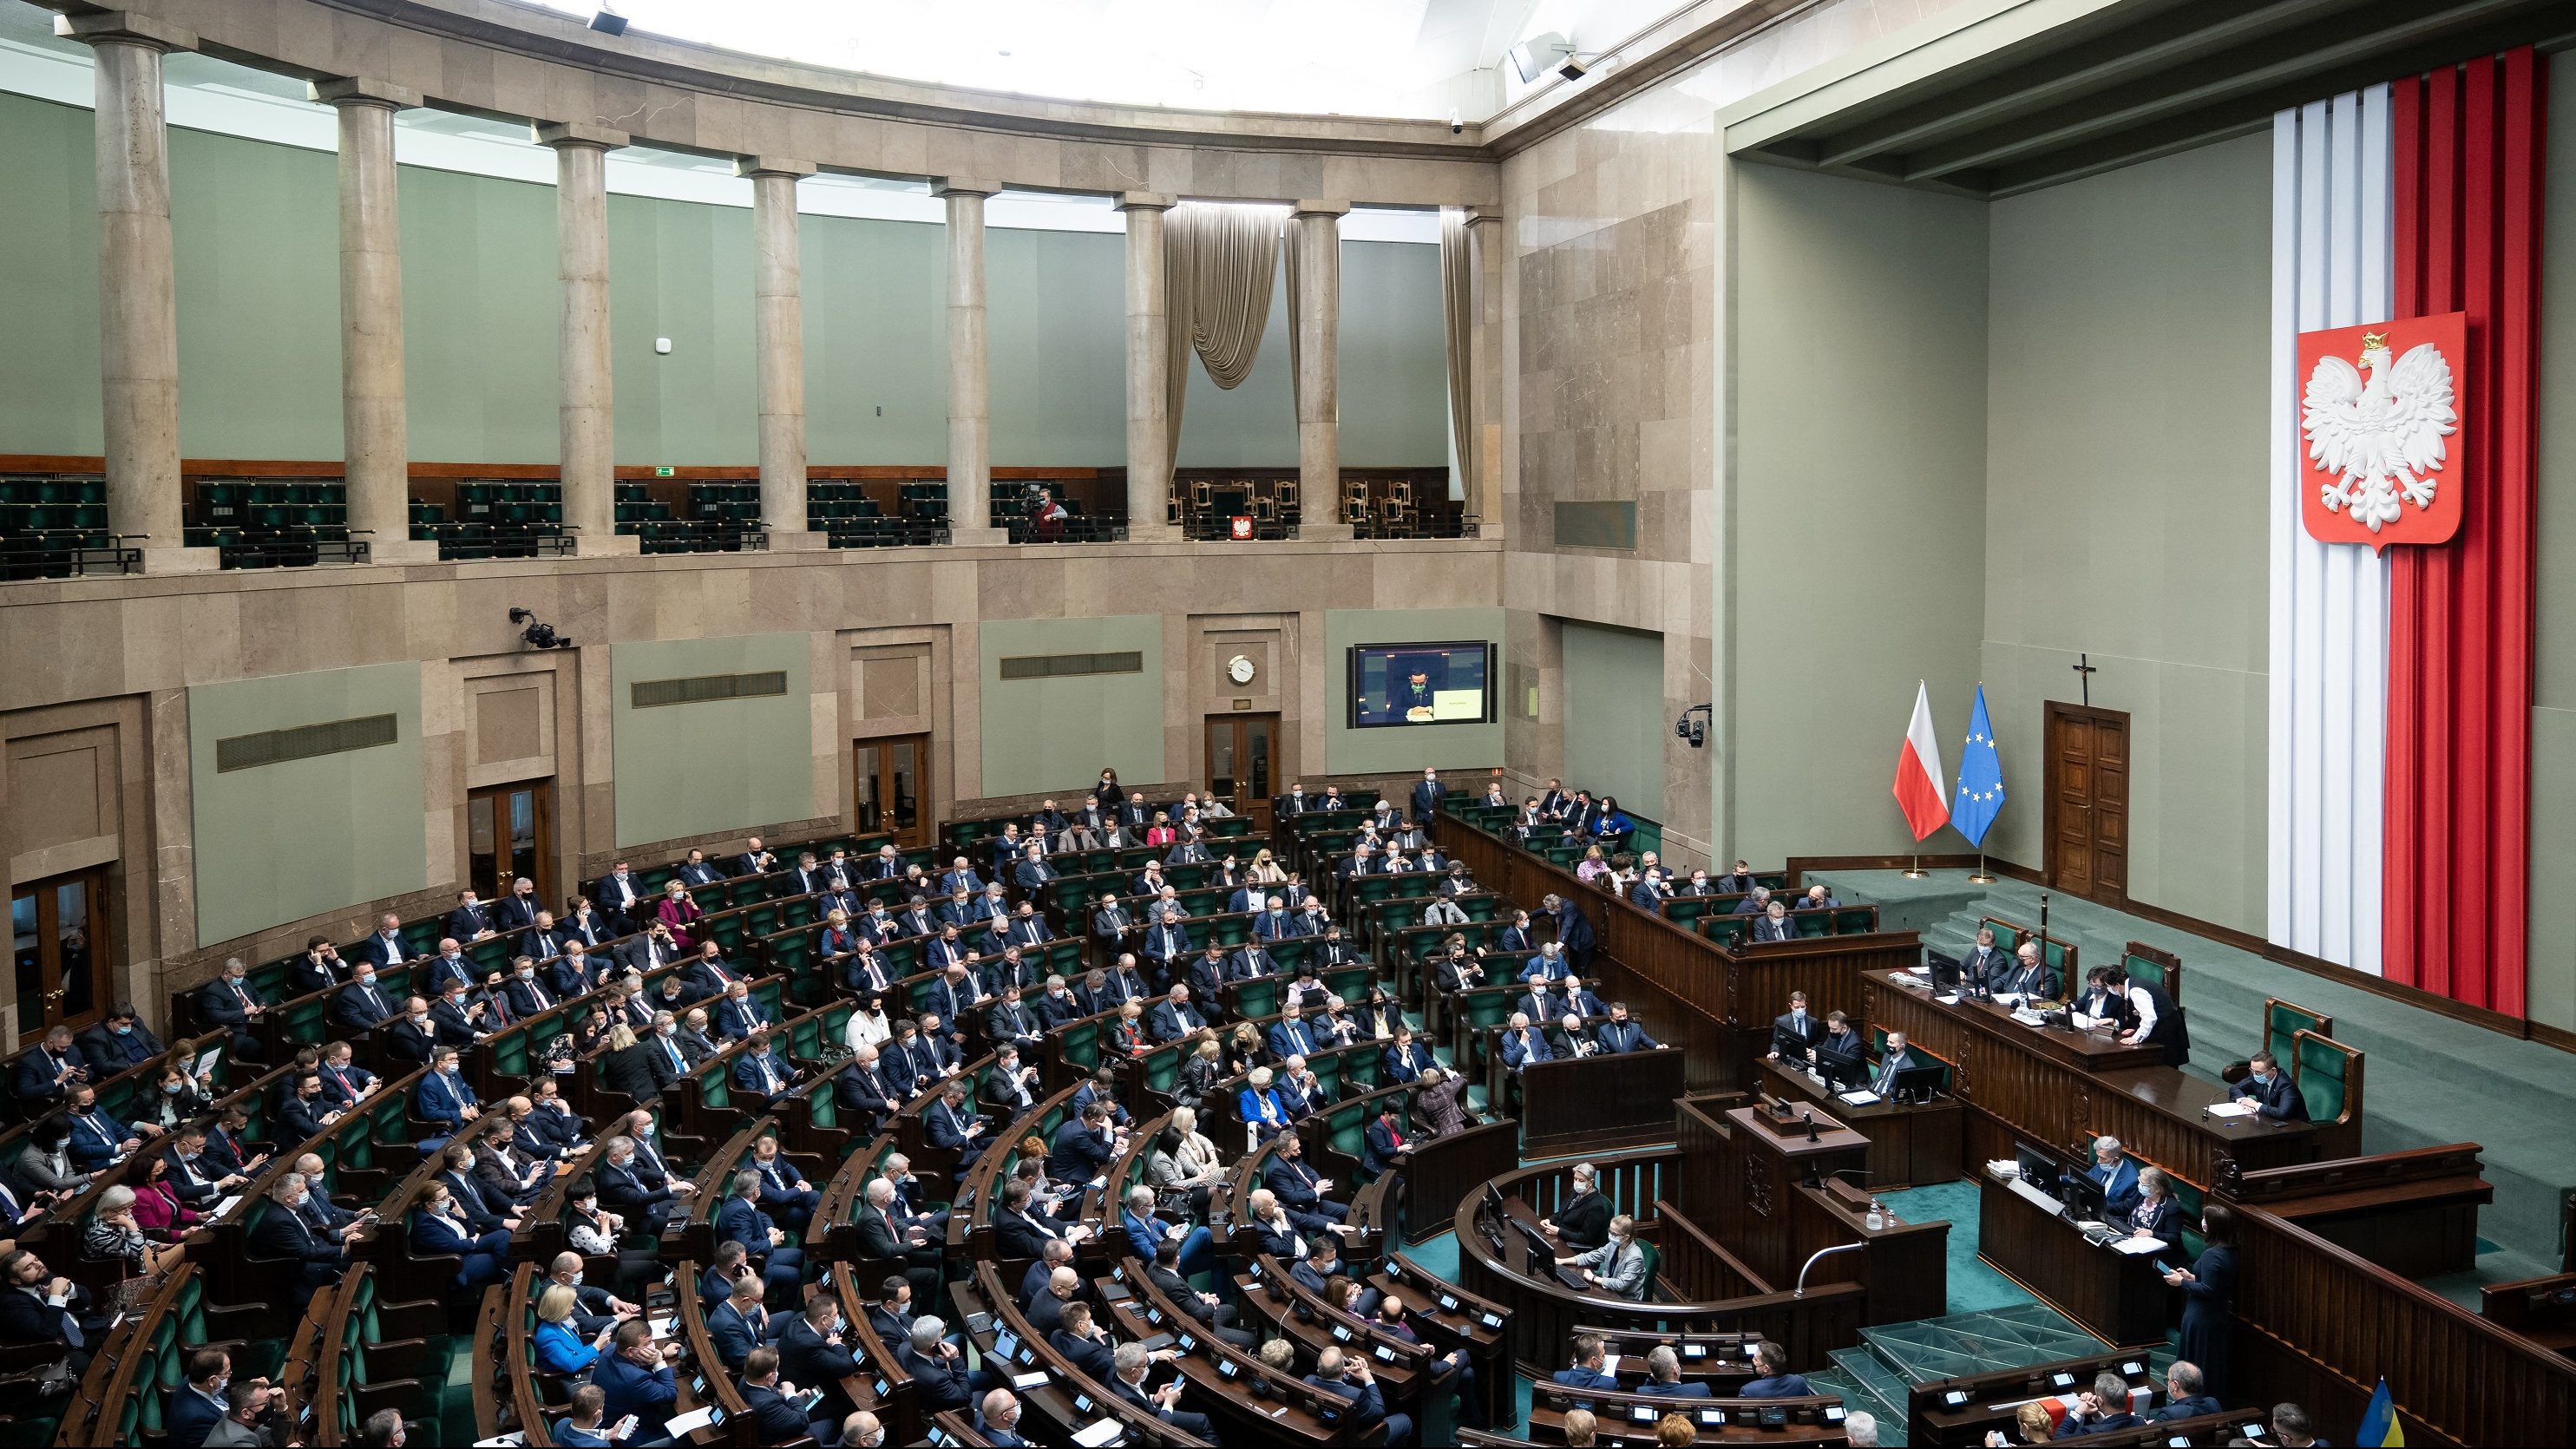 Megszavazta az EU által kifogásolt bírósági fegyelmi kamara megszüntetését a lengyel szejm